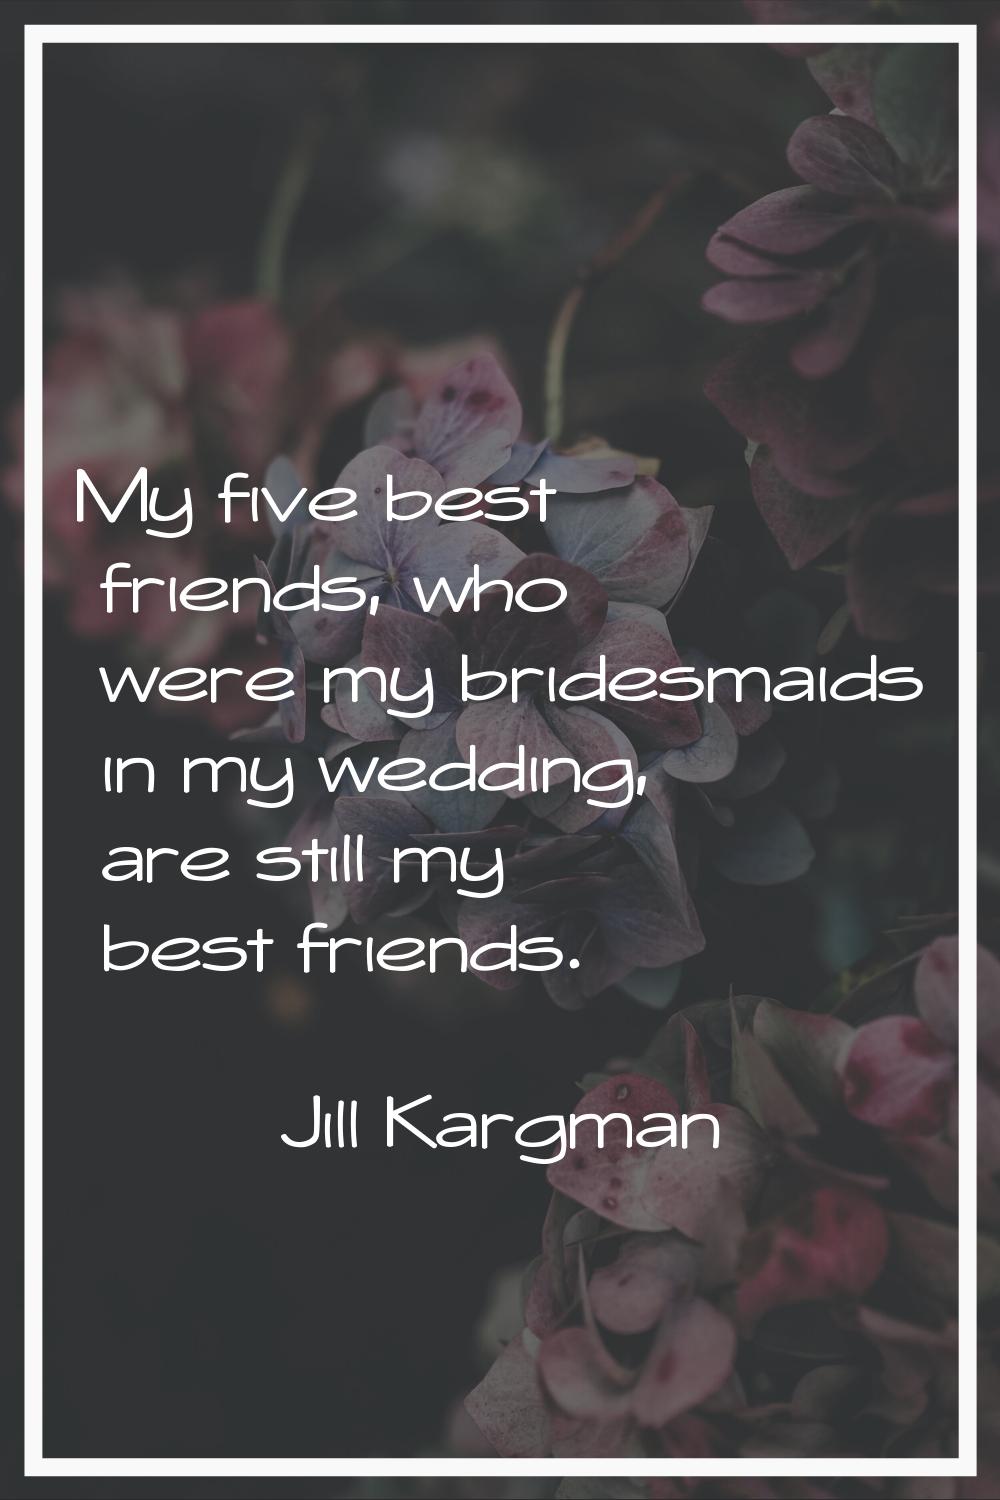 My five best friends, who were my bridesmaids in my wedding, are still my best friends.